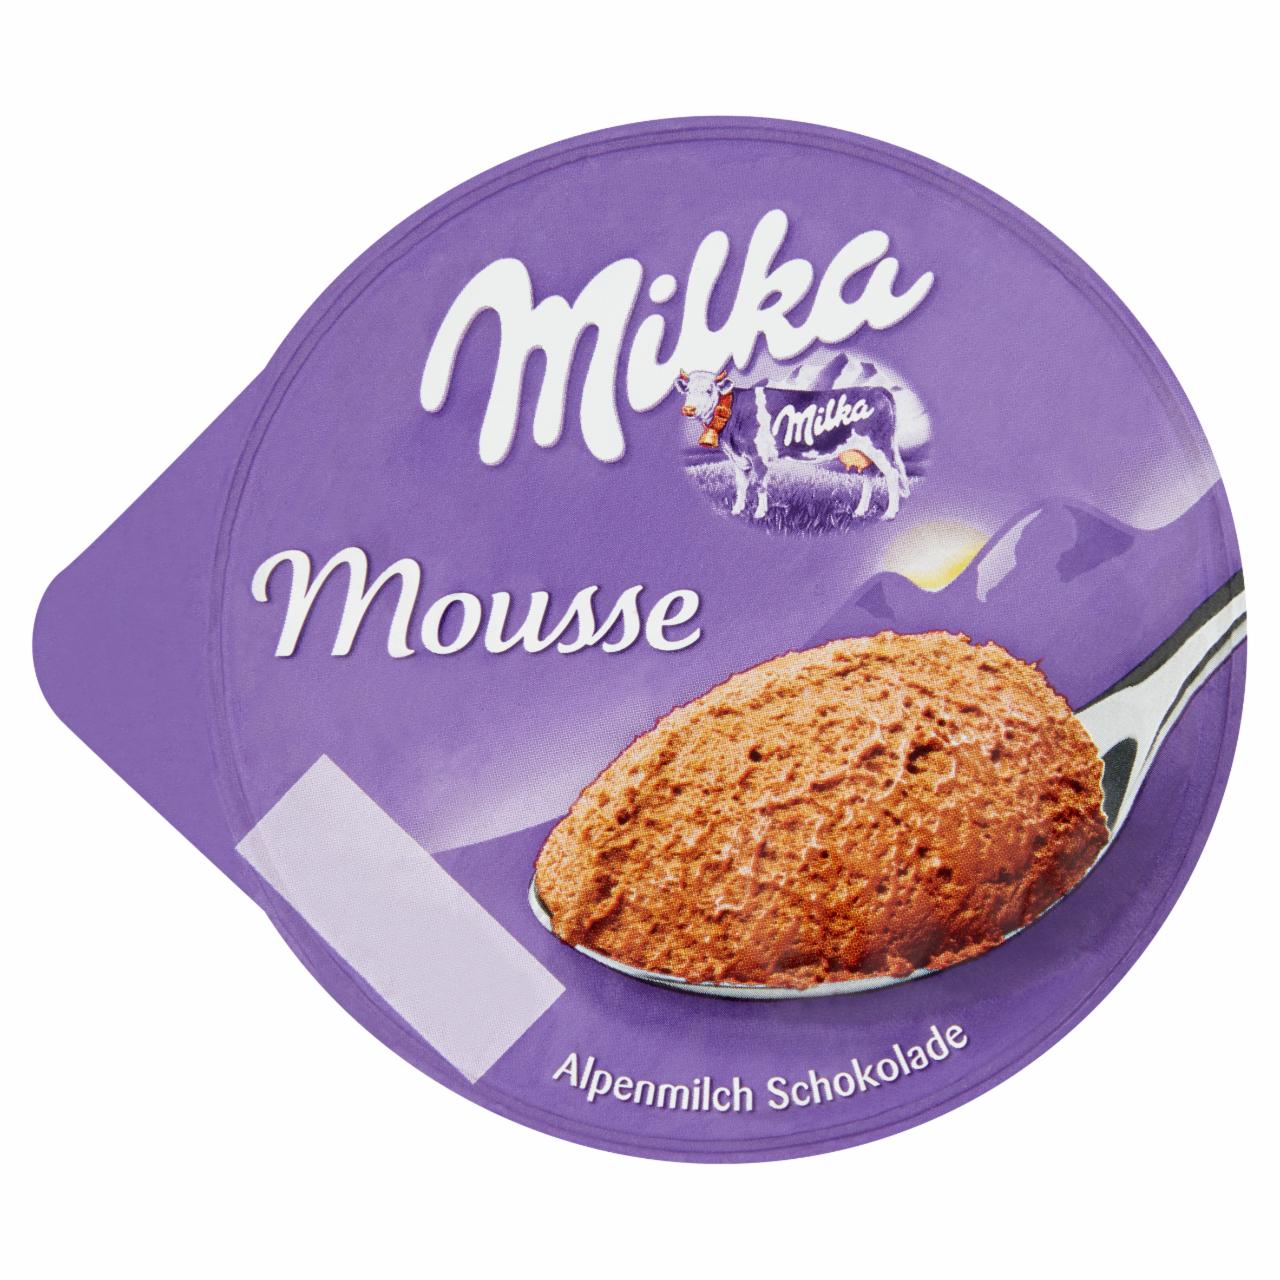 Képek - Milka csokoládé mousse mogyoró ízesítéssel 75 g